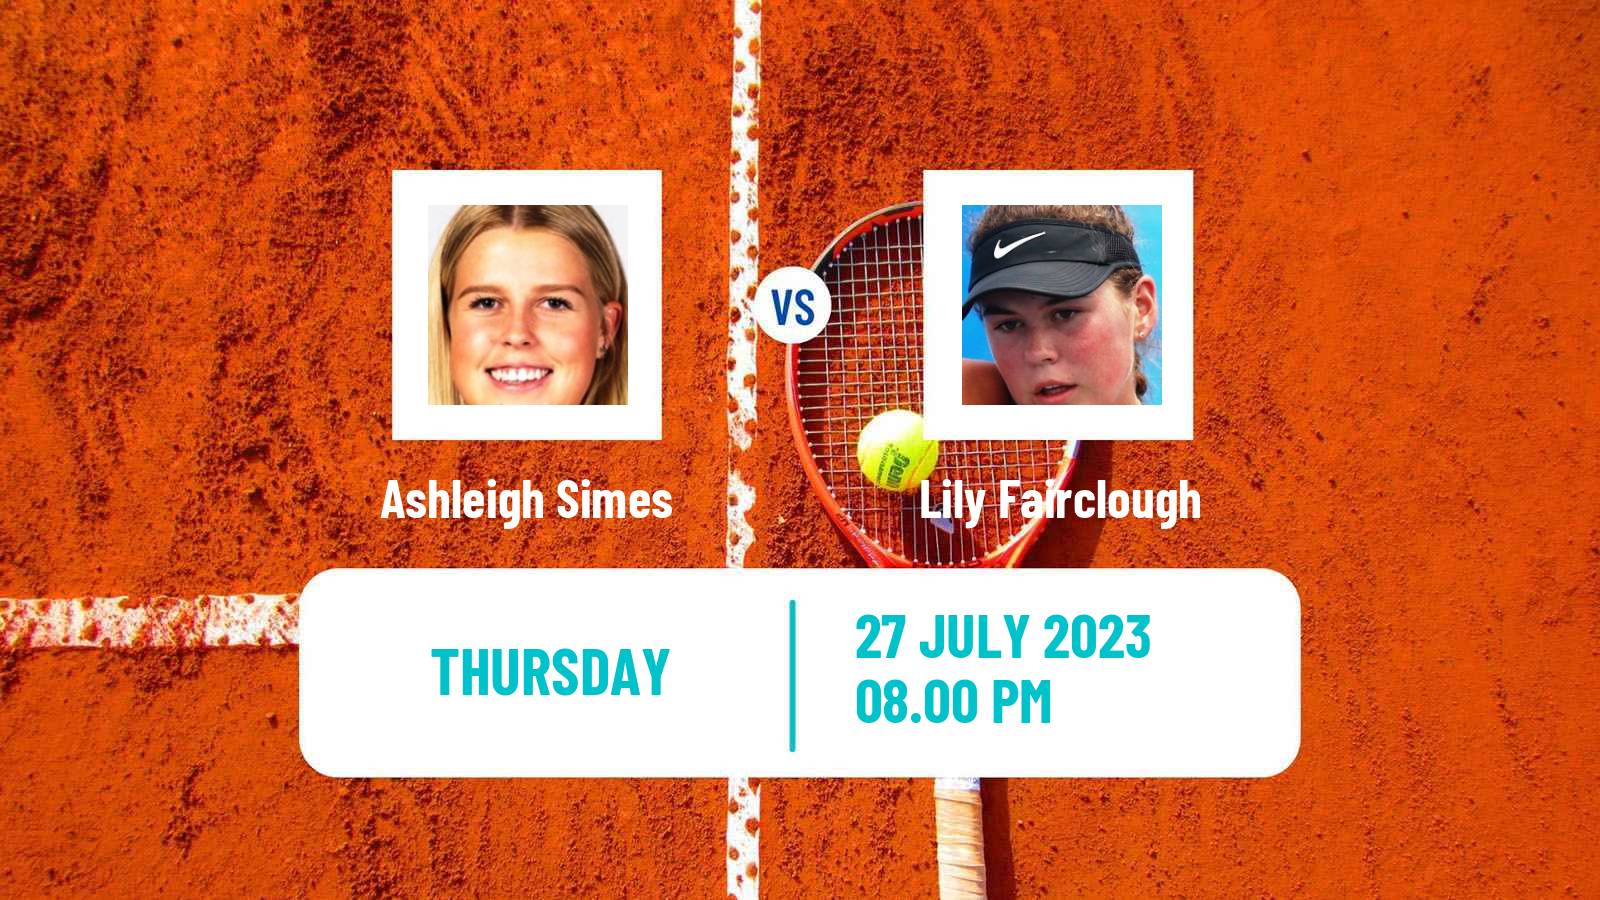 Tennis ITF W15 Caloundra Women Ashleigh Simes - Lily Fairclough